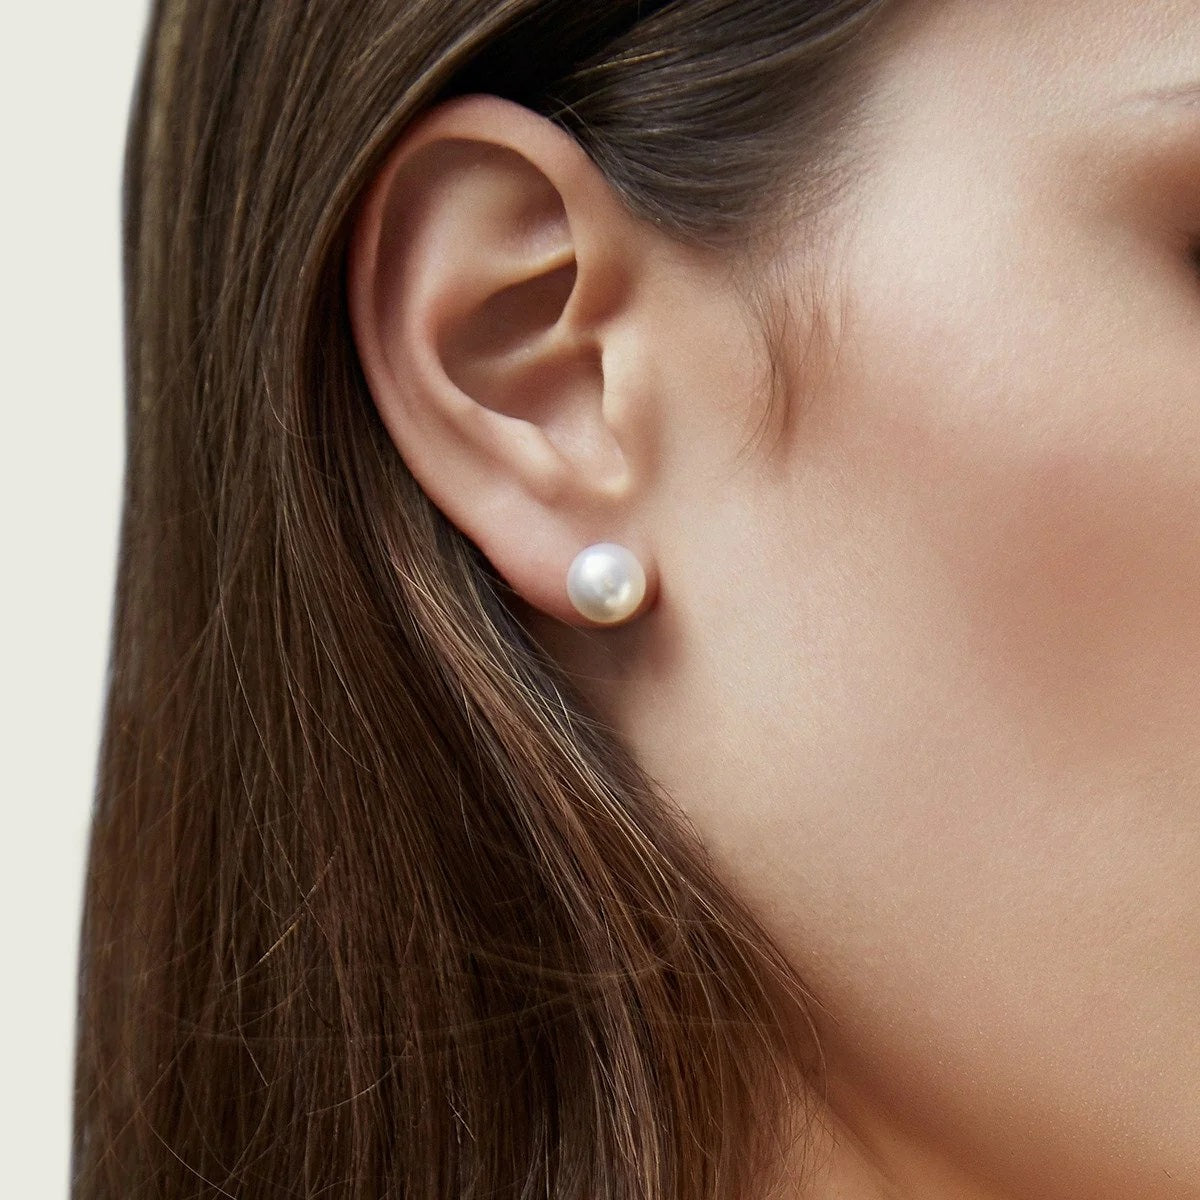 Best Pearl Earring Sizes to Wear 8-9mm